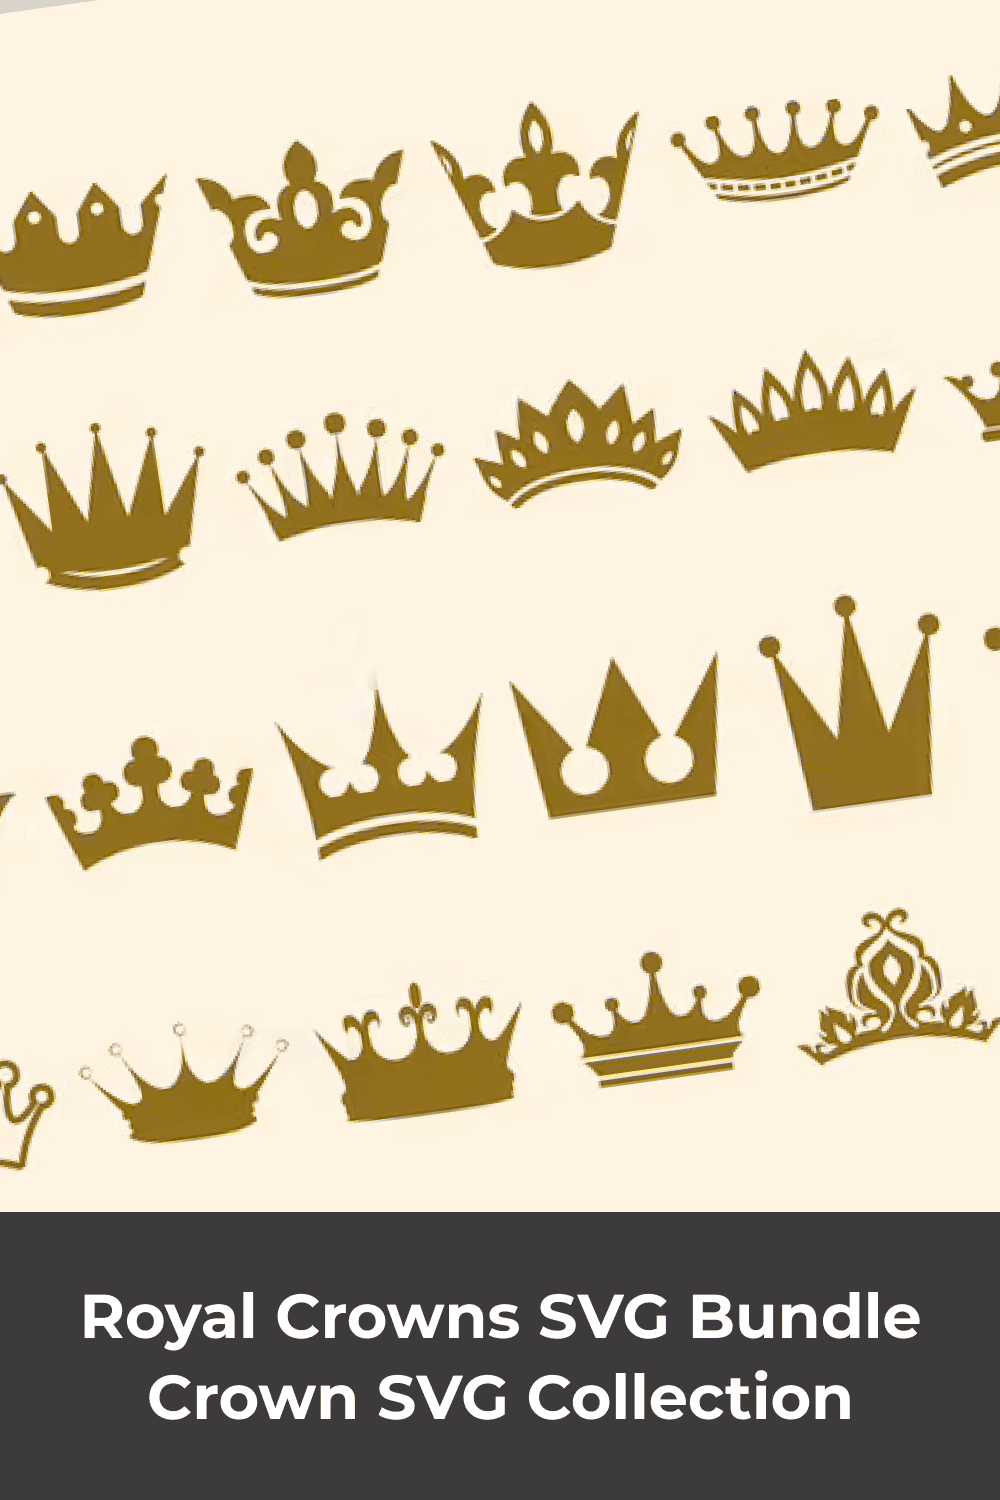 Big variety of crowns.